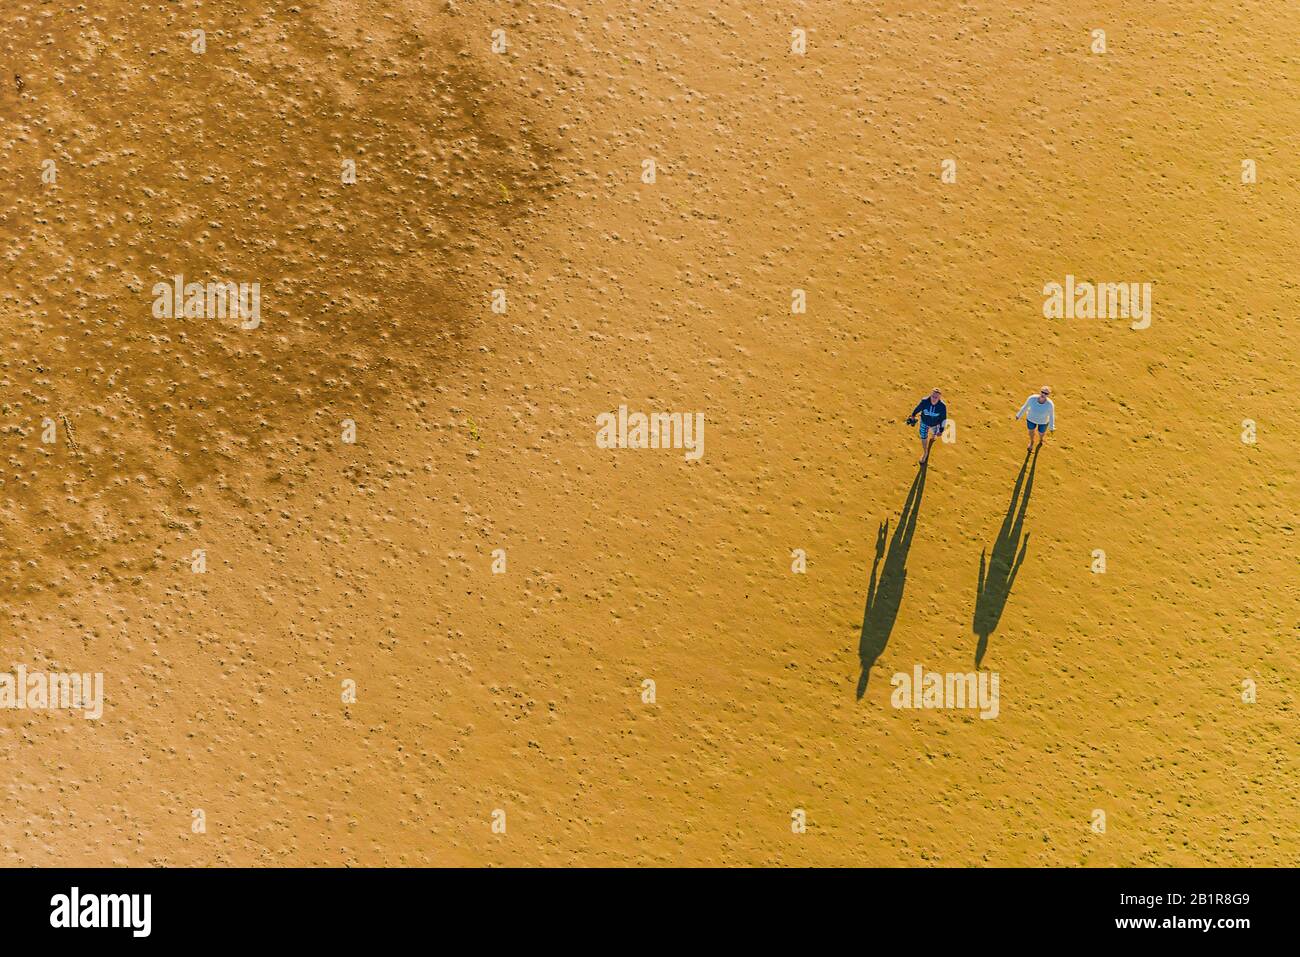 Deux personnes jettent de longues ombres sur la plage de sable, vue aérienne, Allemagne, Schleswig-Holstein, Frise du Nord Banque D'Images